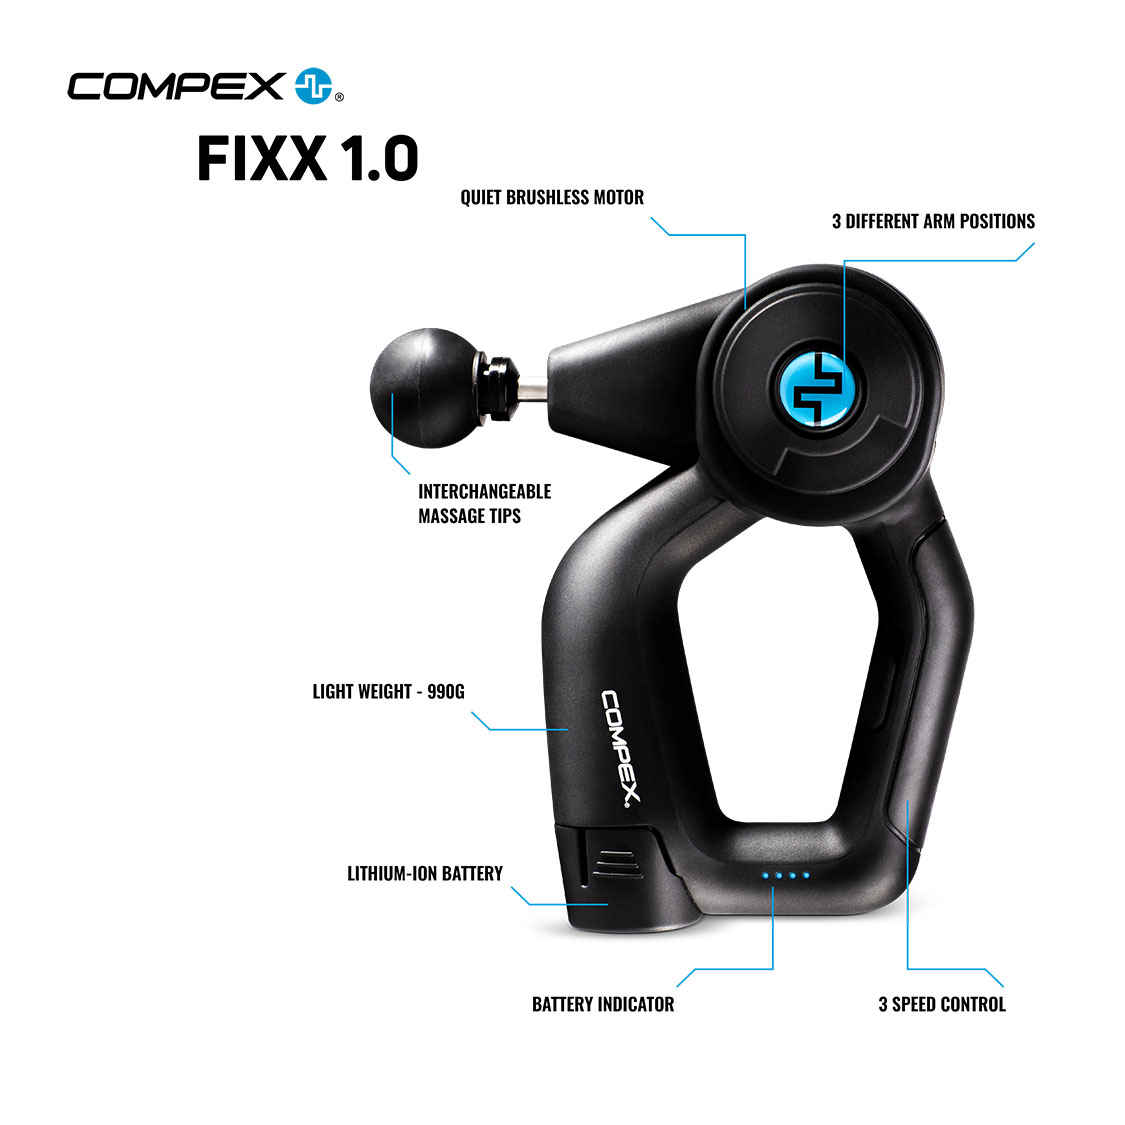 Compex Fixx 1.0 Infographic